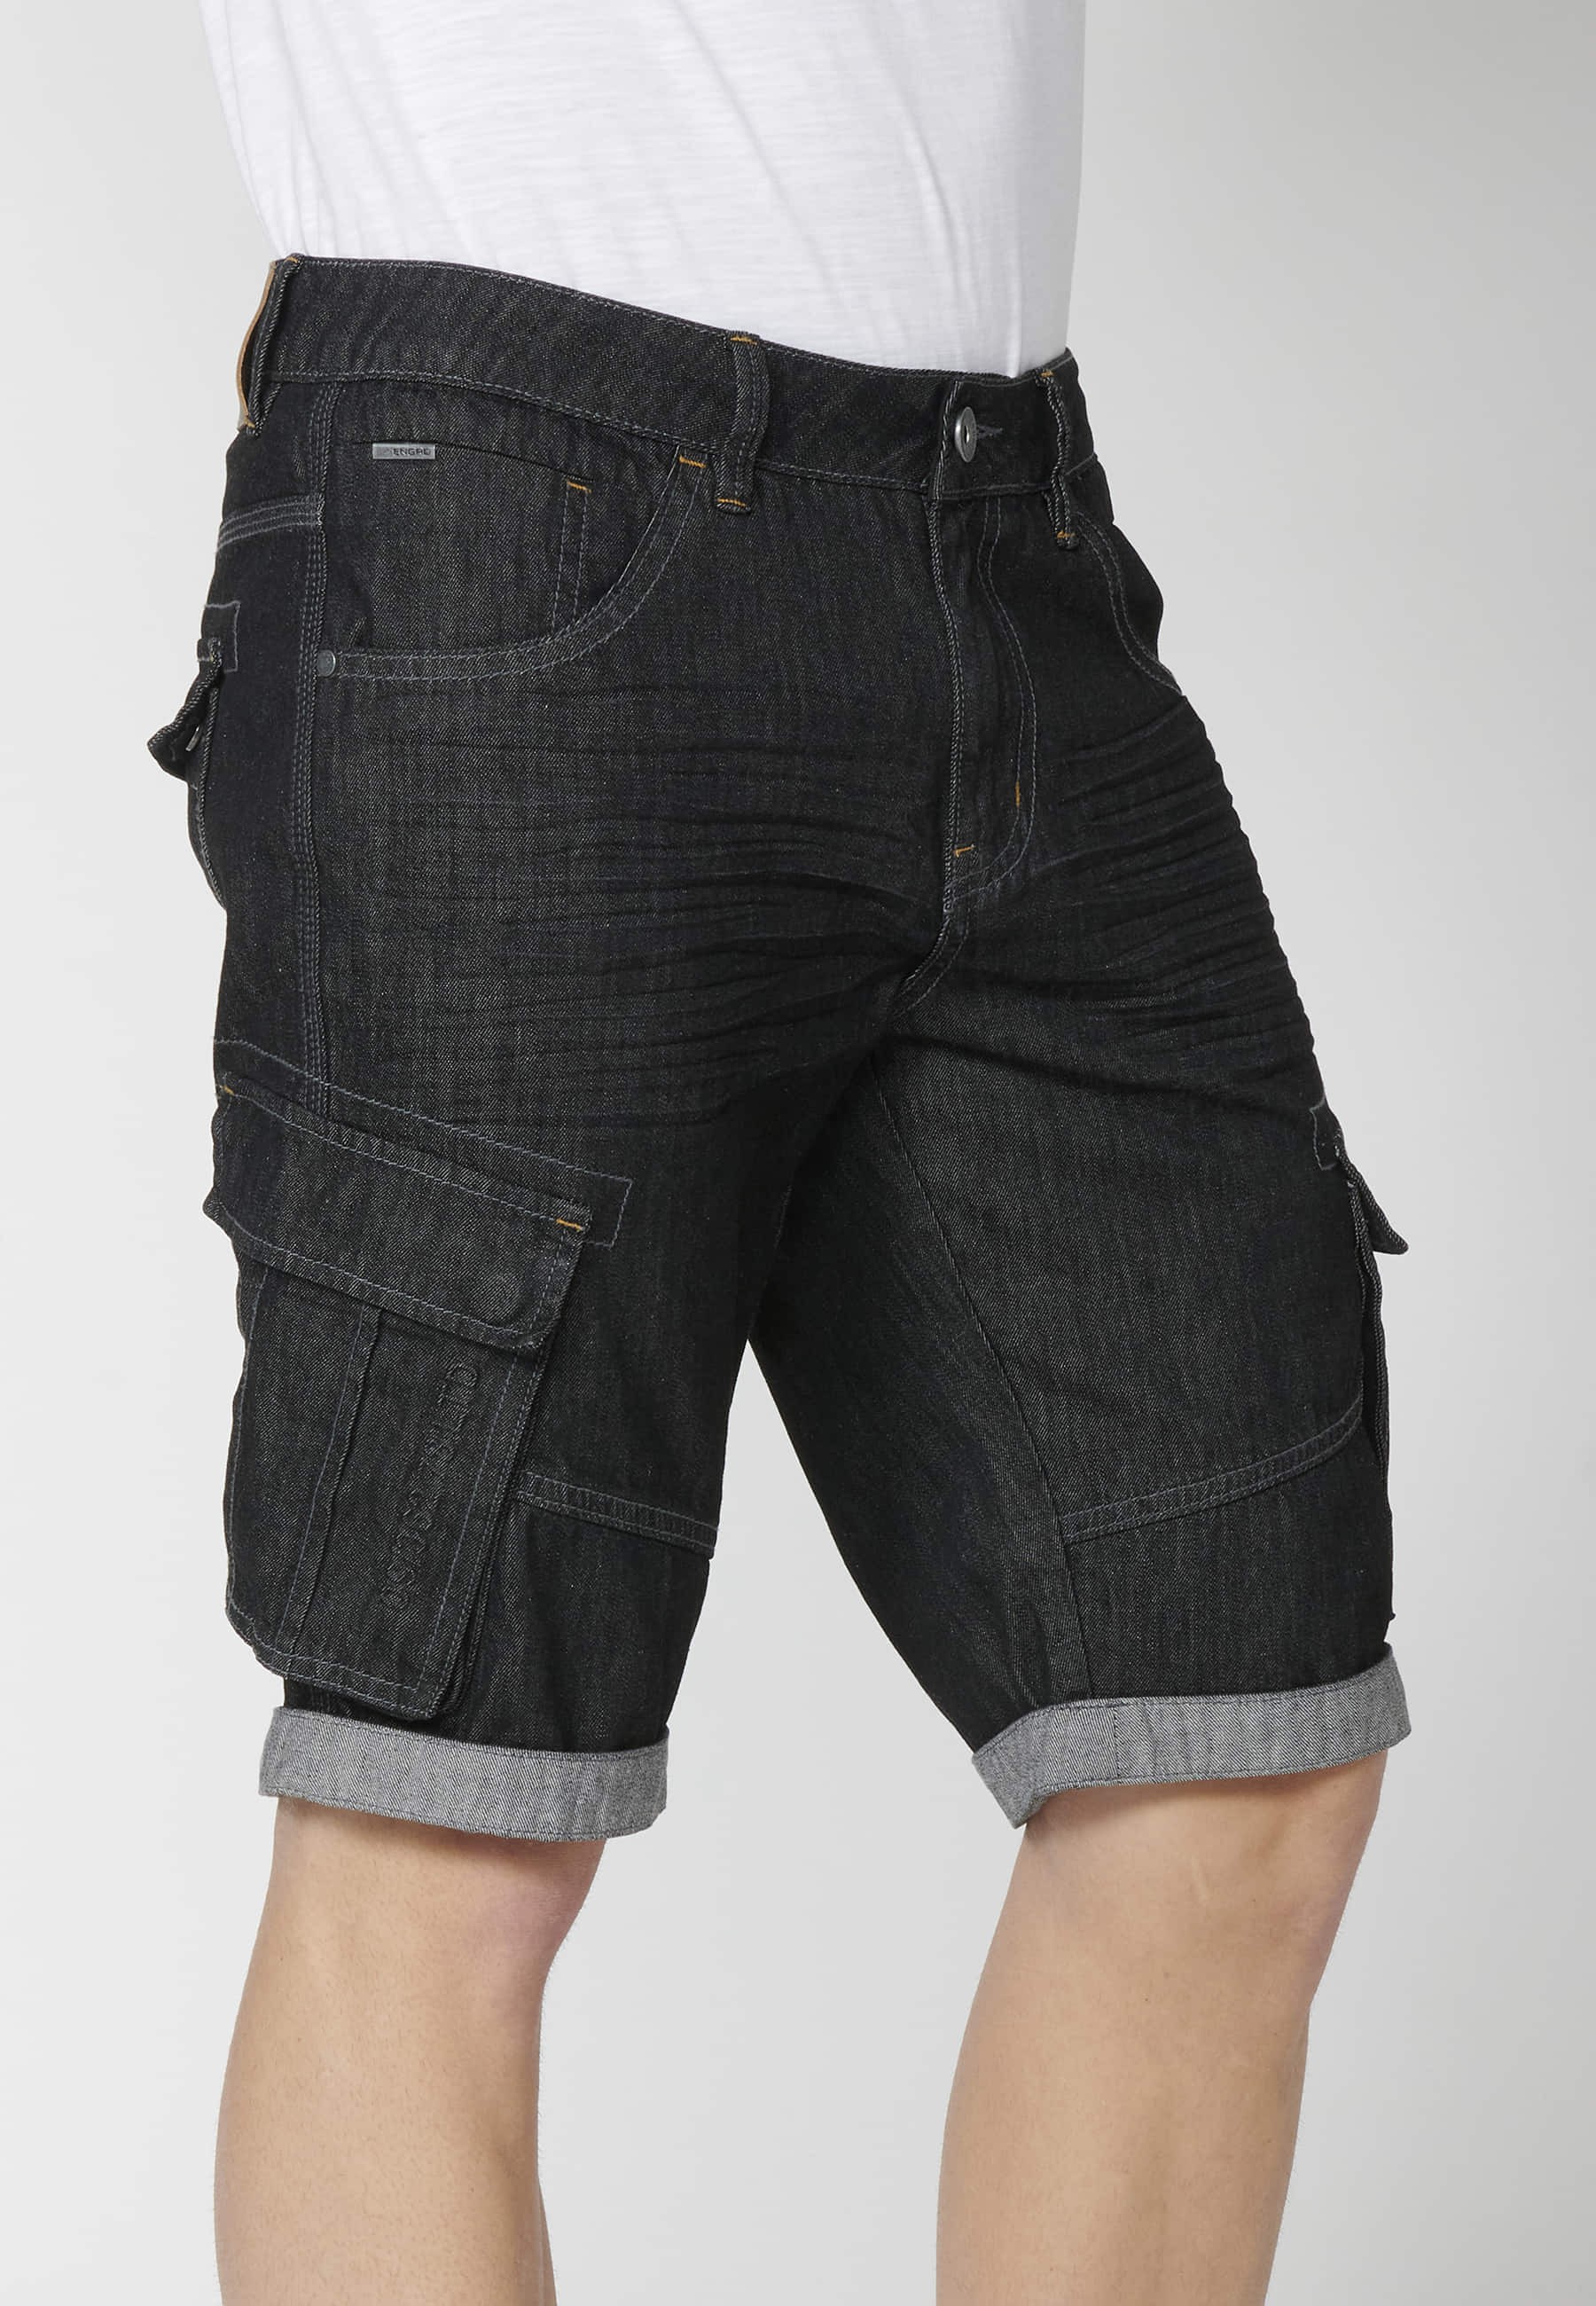 Shorts Bermuda Denim Stretch Regular Fit with four pockets Black color for Men 3